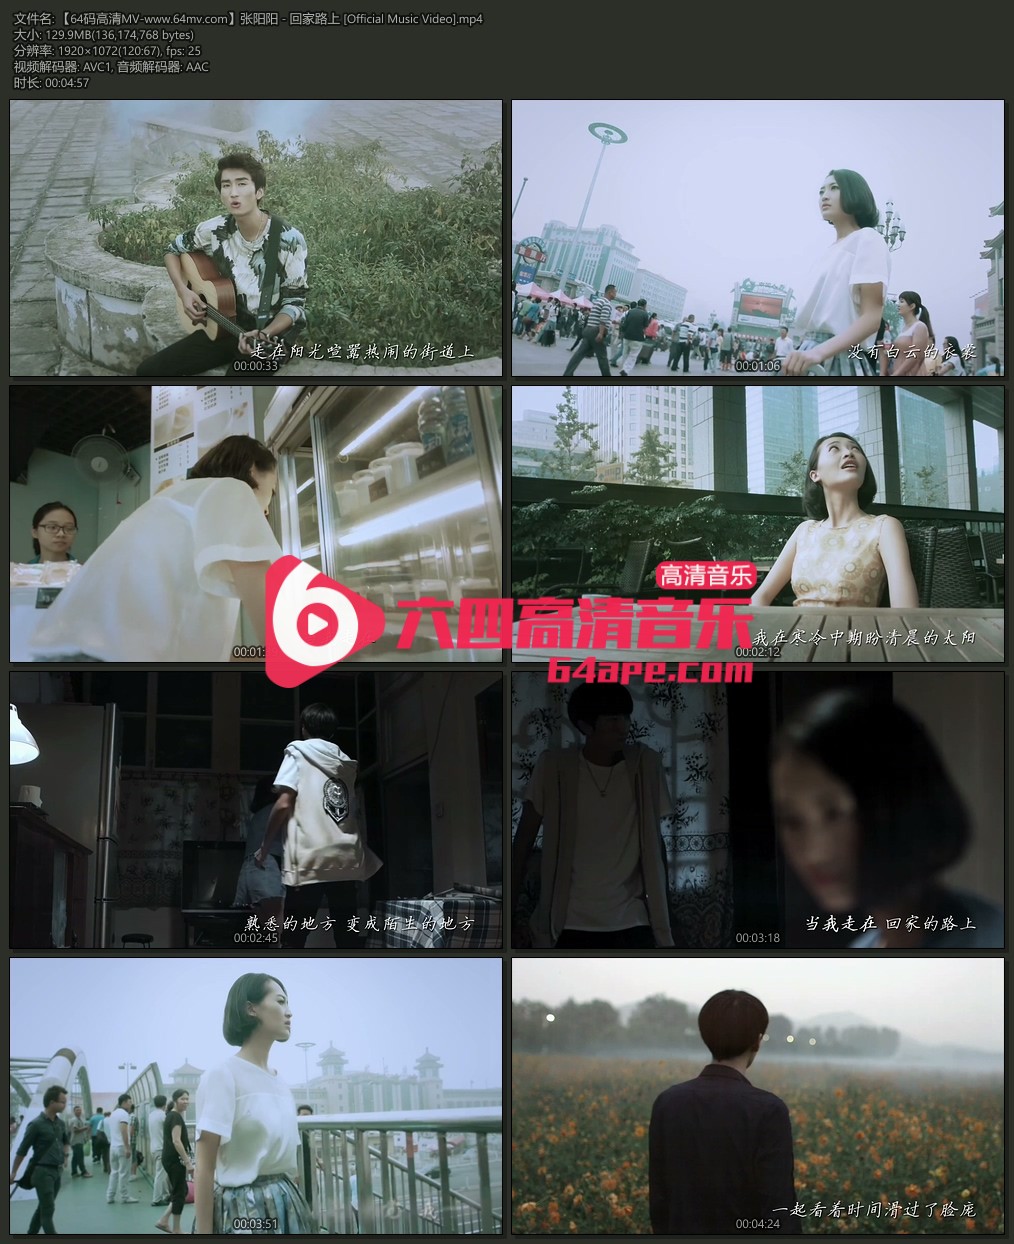 张阳阳 《回家路上》 Official Music Video 1080P